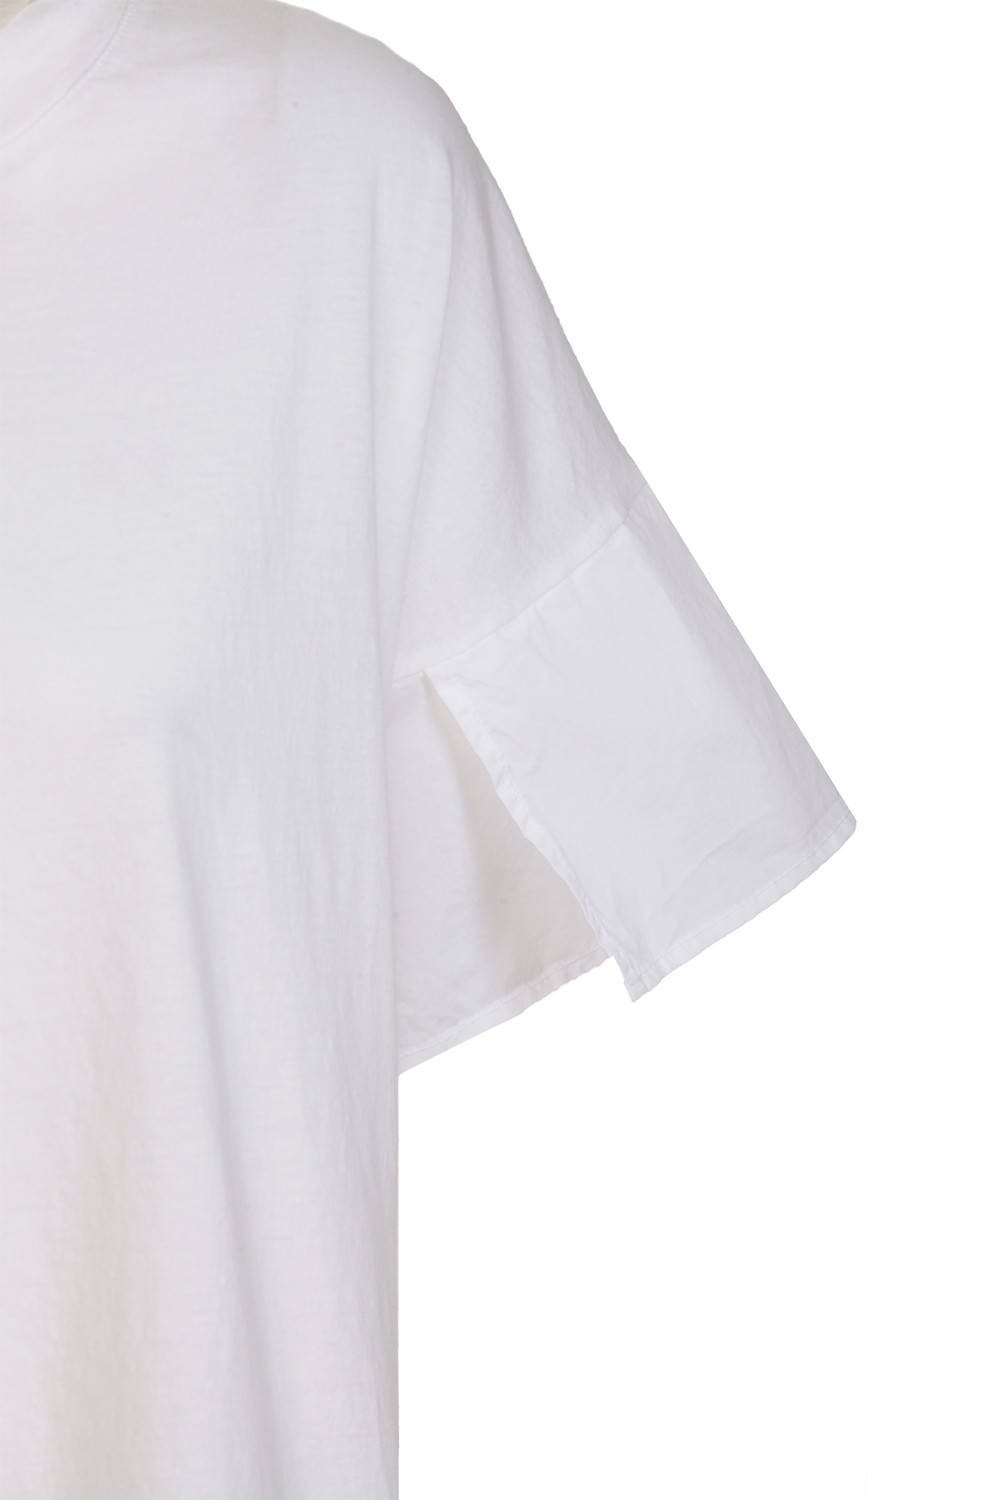 shop ROBERTO COLLINA Saldi T-shirt: Roberto Collina T-shirt in cotone, bianco.
Maniche corte con apertura.
Scollo rotondo.
Regular fit.
Composizione: 100% cotone.
Made in Italy.. E52121-E5201 number 655572